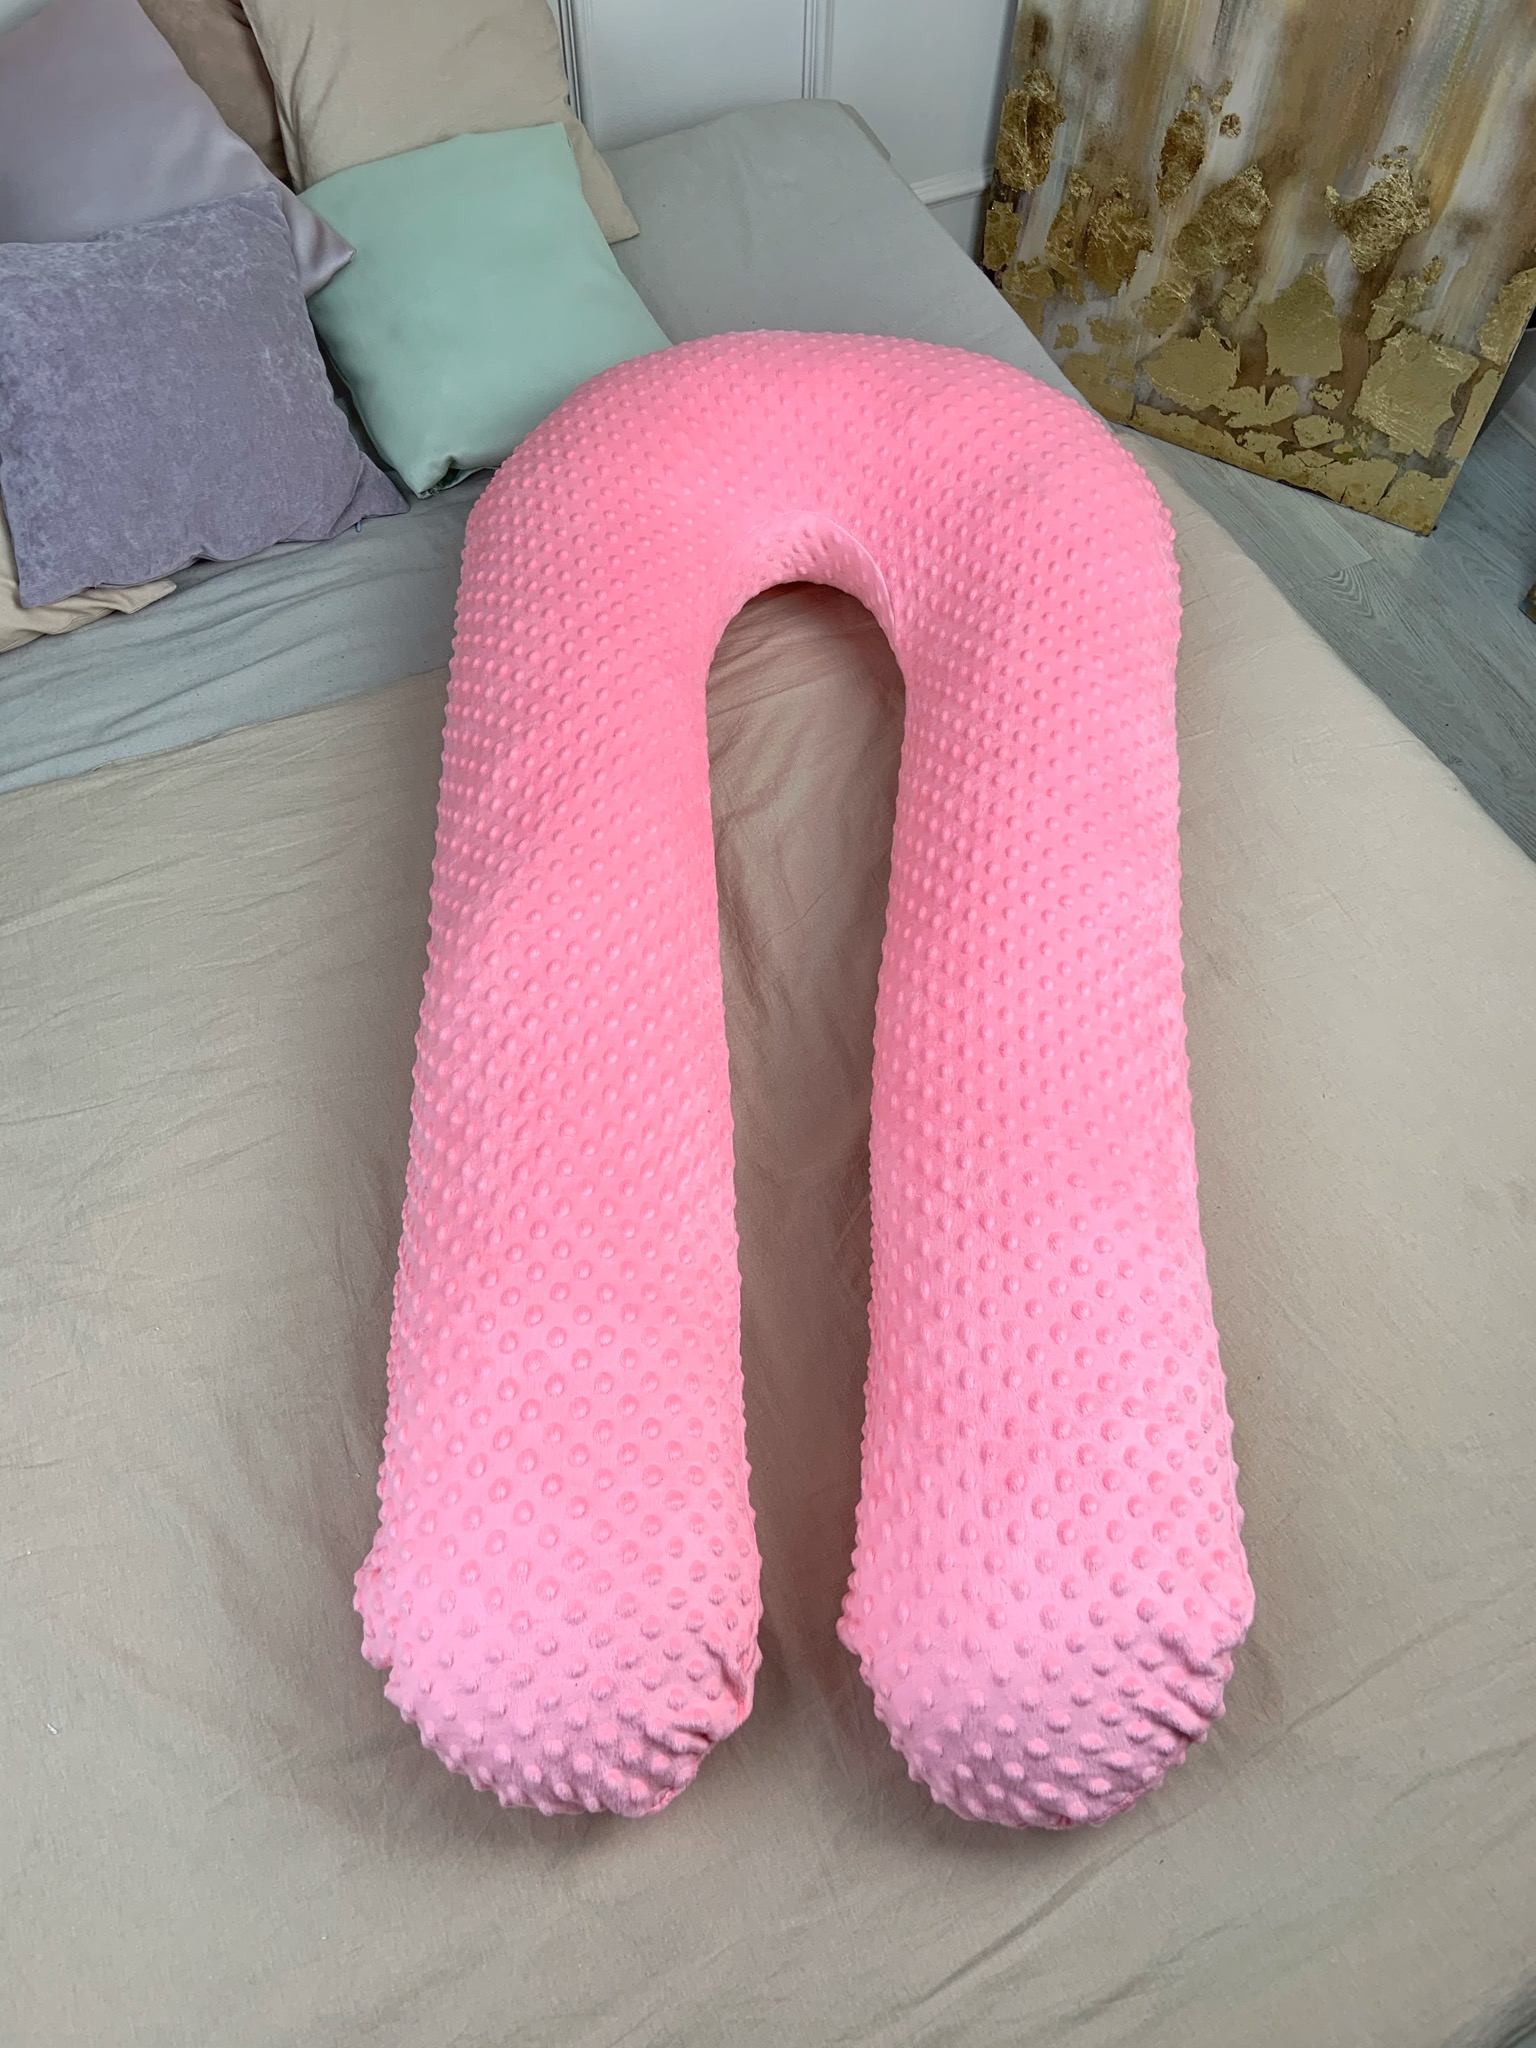 Подушка для беременных с наволочкой Coolki Минки Плюш Pink XXXL 170x75